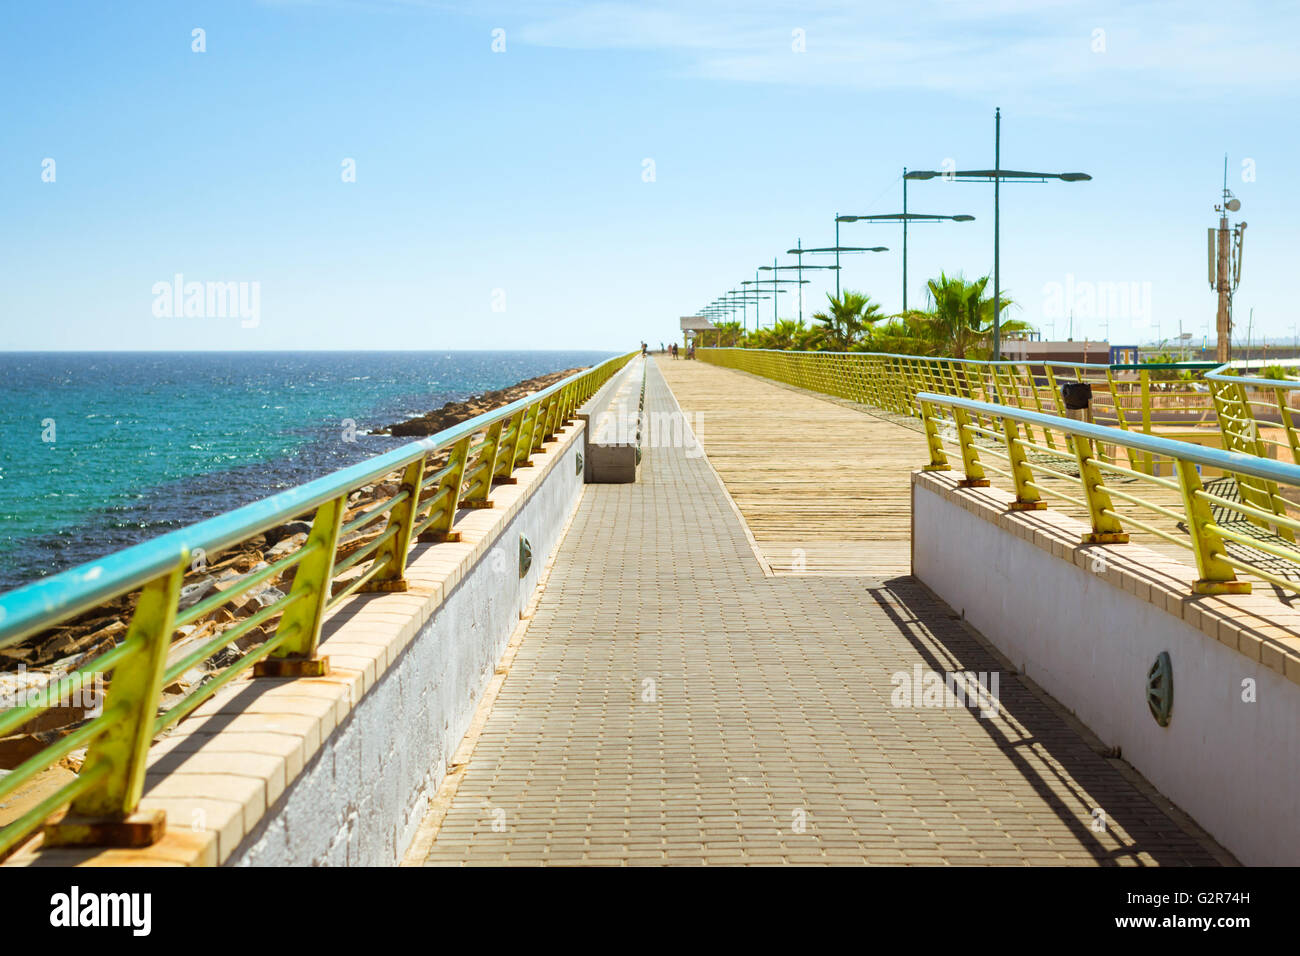 Passerelle pour piétons-pier - chemin à travers Puerto deportivo Marina Salinas à Faro Torrevieja. Jetée en béton armé pour les piétons Banque D'Images